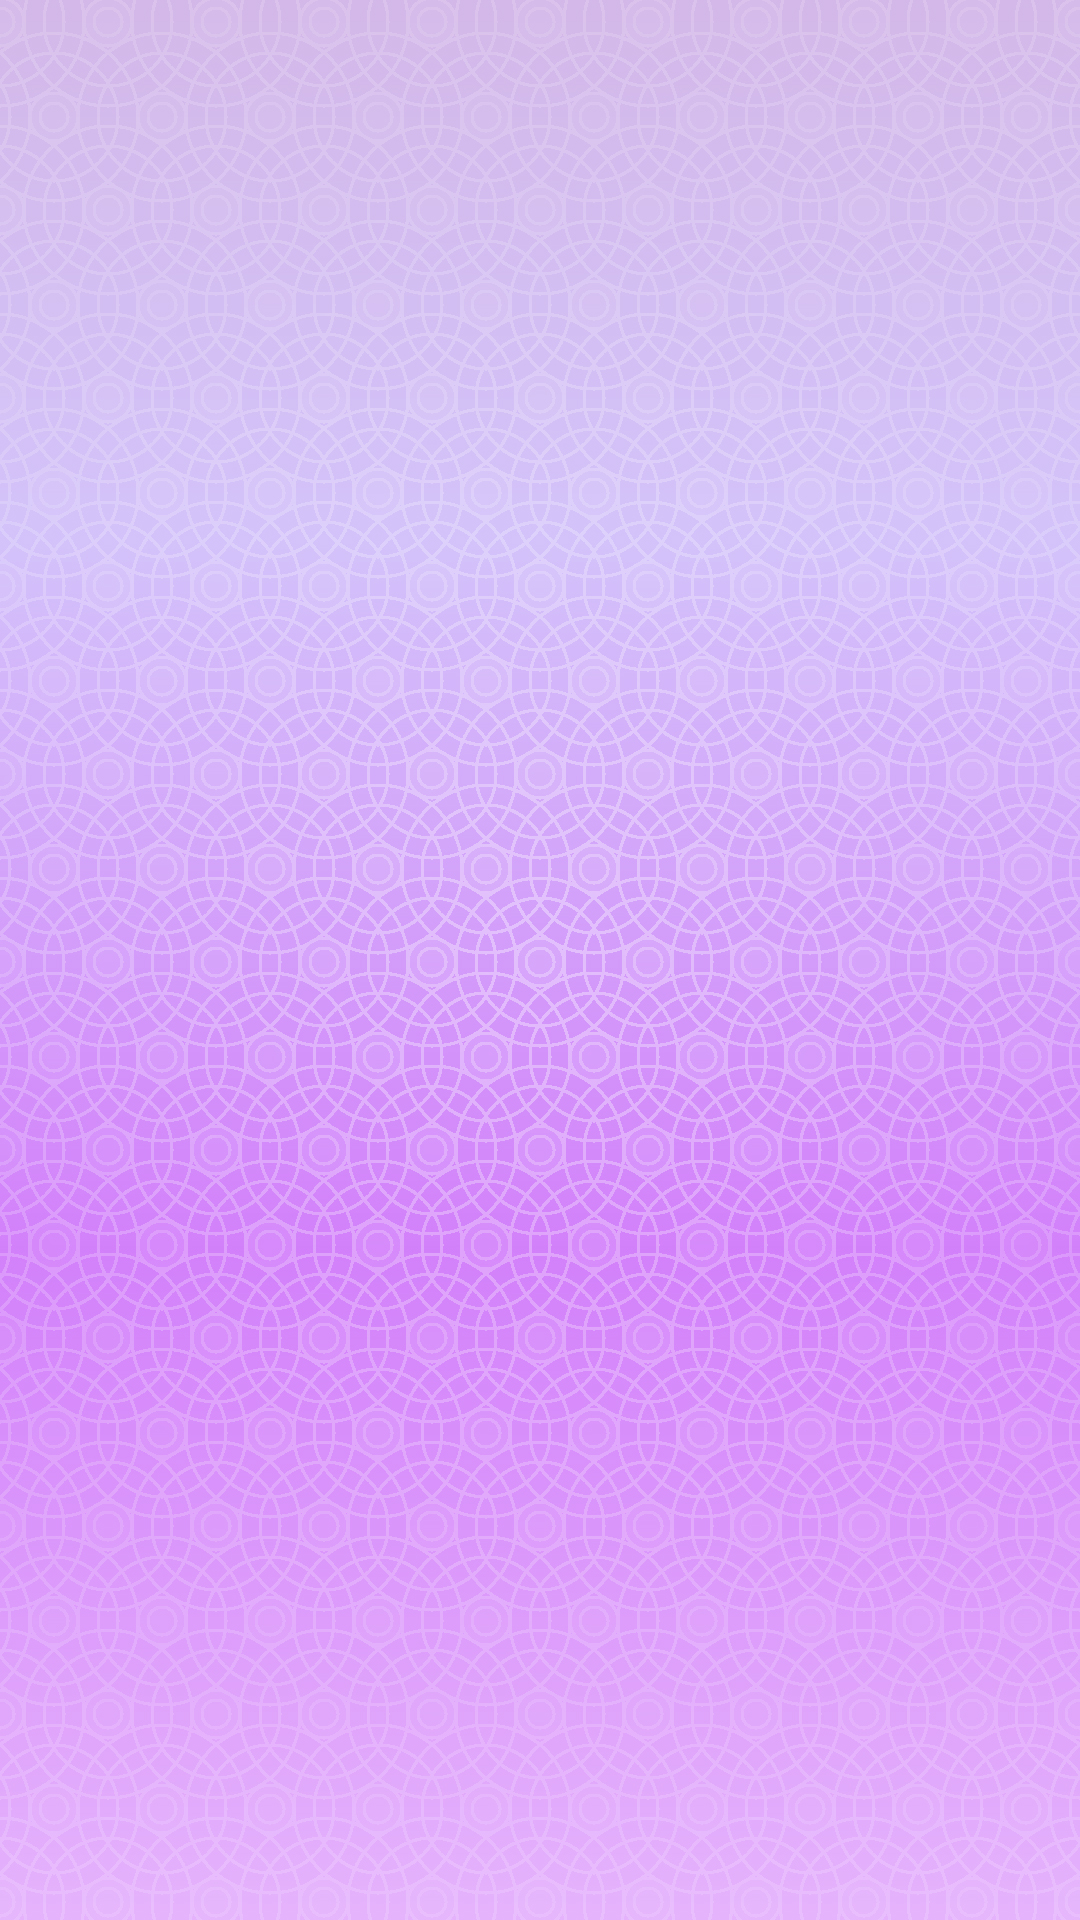 ディズニー画像ランド ぜいたくiphone 壁紙 紫 グラデーション